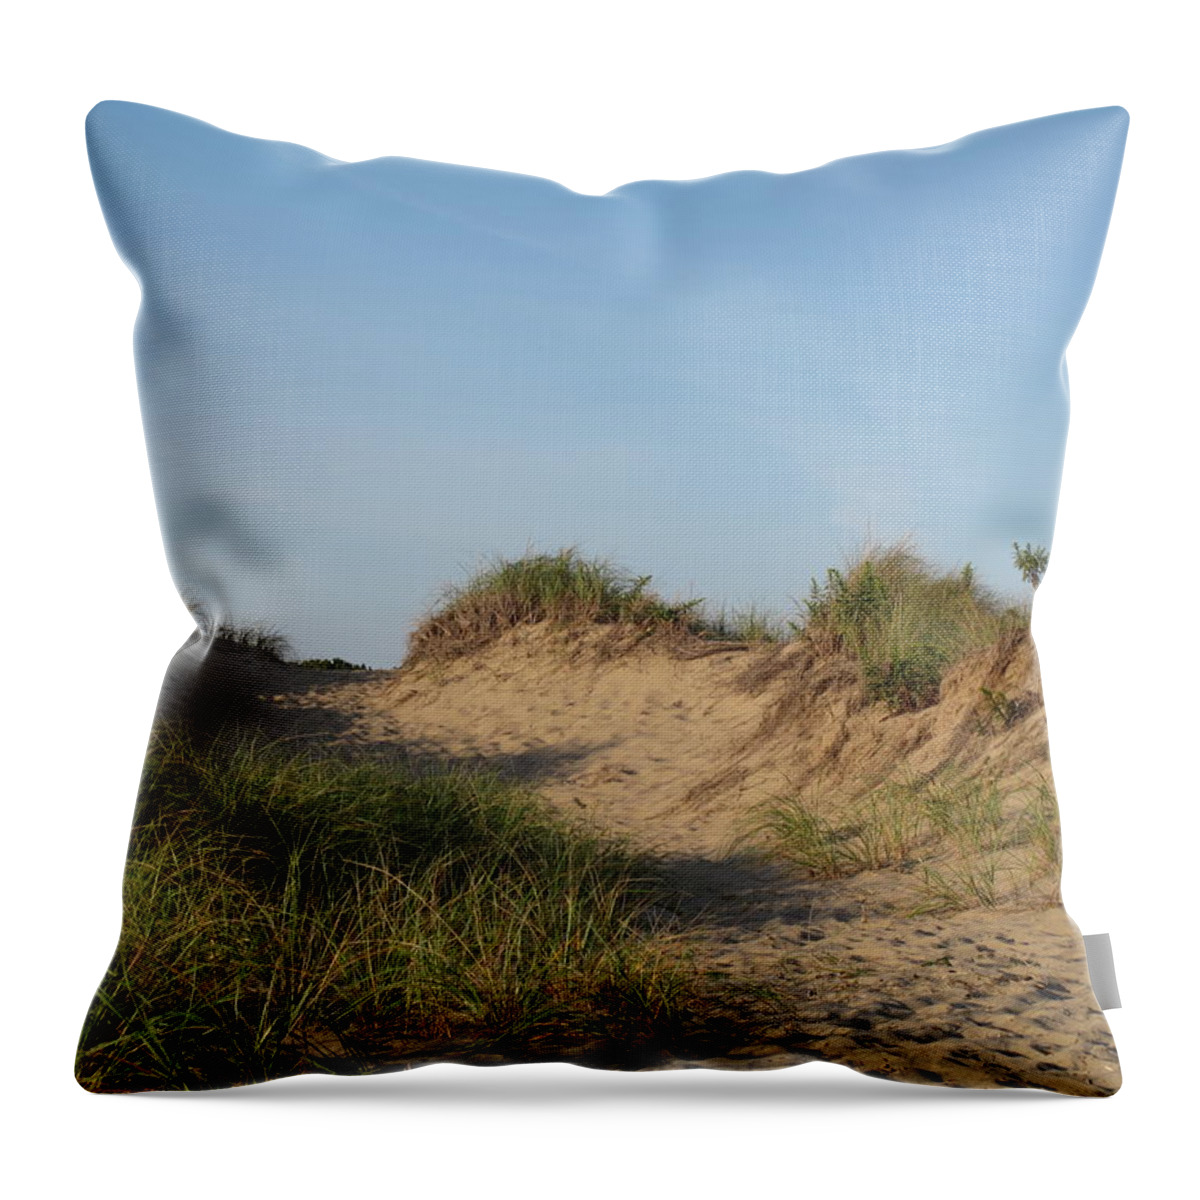 Landscape Throw Pillow featuring the photograph Lieutenant Island Dunes by Barbara McDevitt